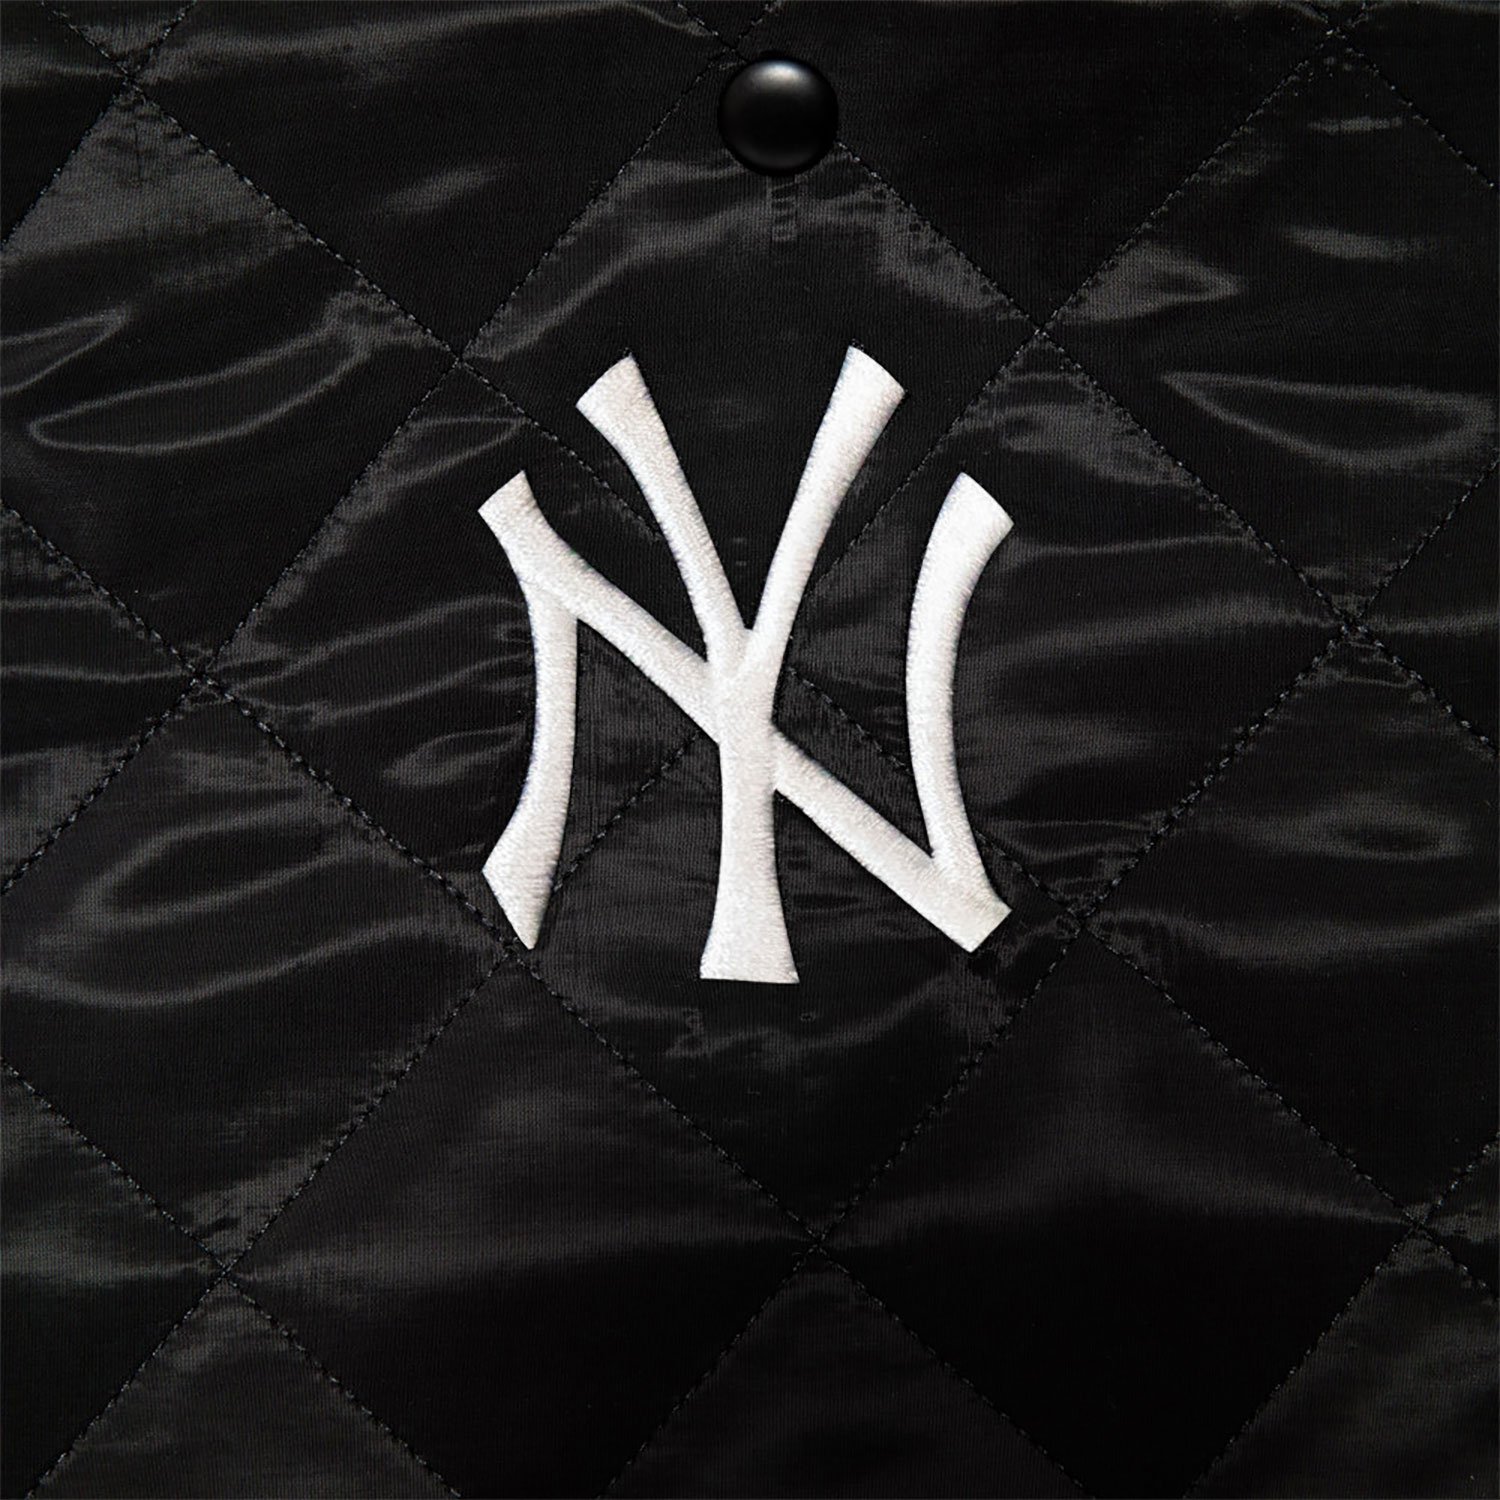 I Love New York Tote Bag - Lona negra, bolsas de asas de Nueva York,  recuerdos de Nueva York, Negro 